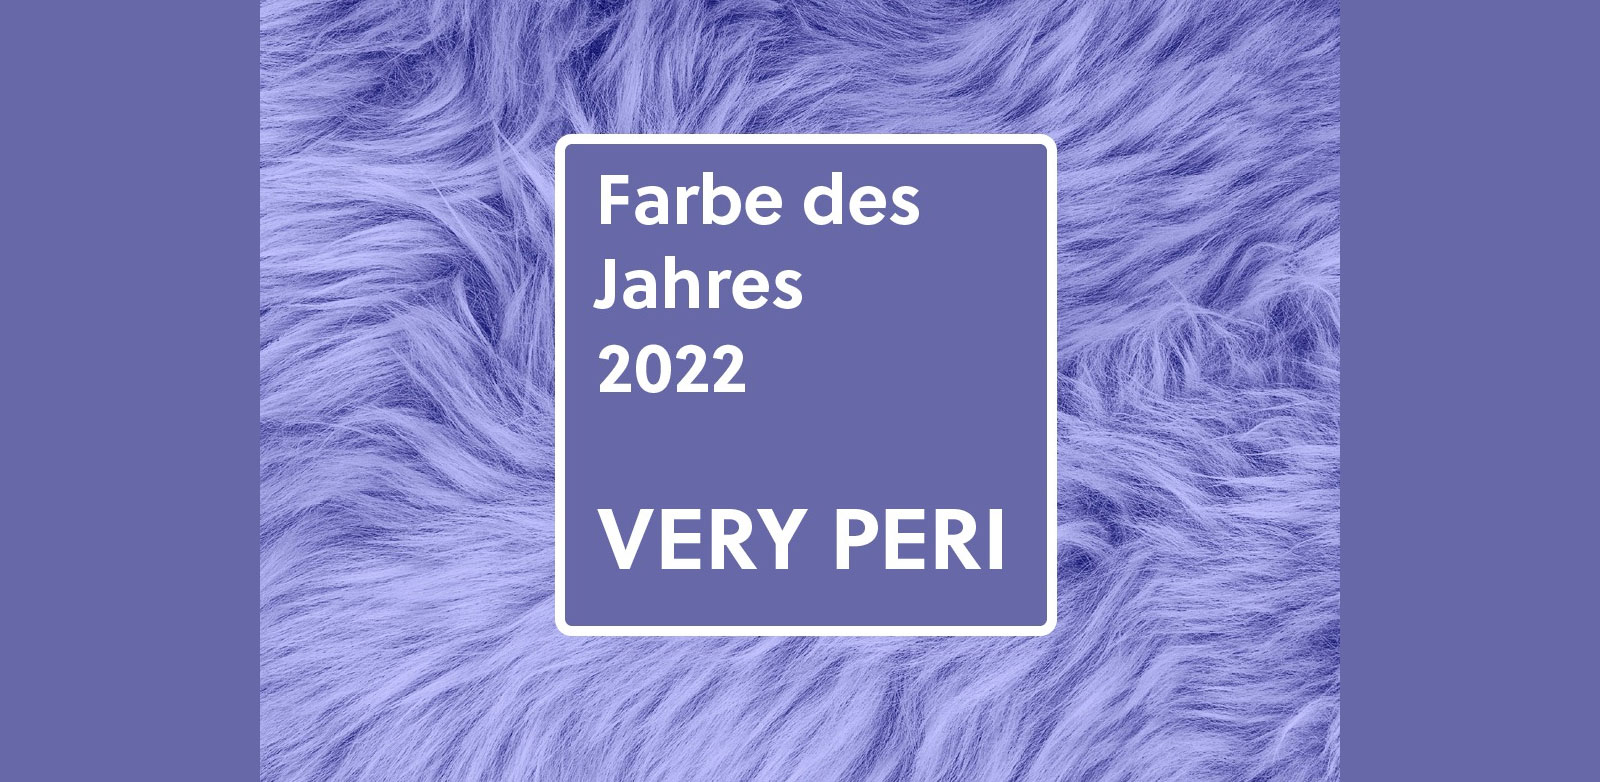 Pantone-Farbe-des-Jahres-2022-Very-Peri